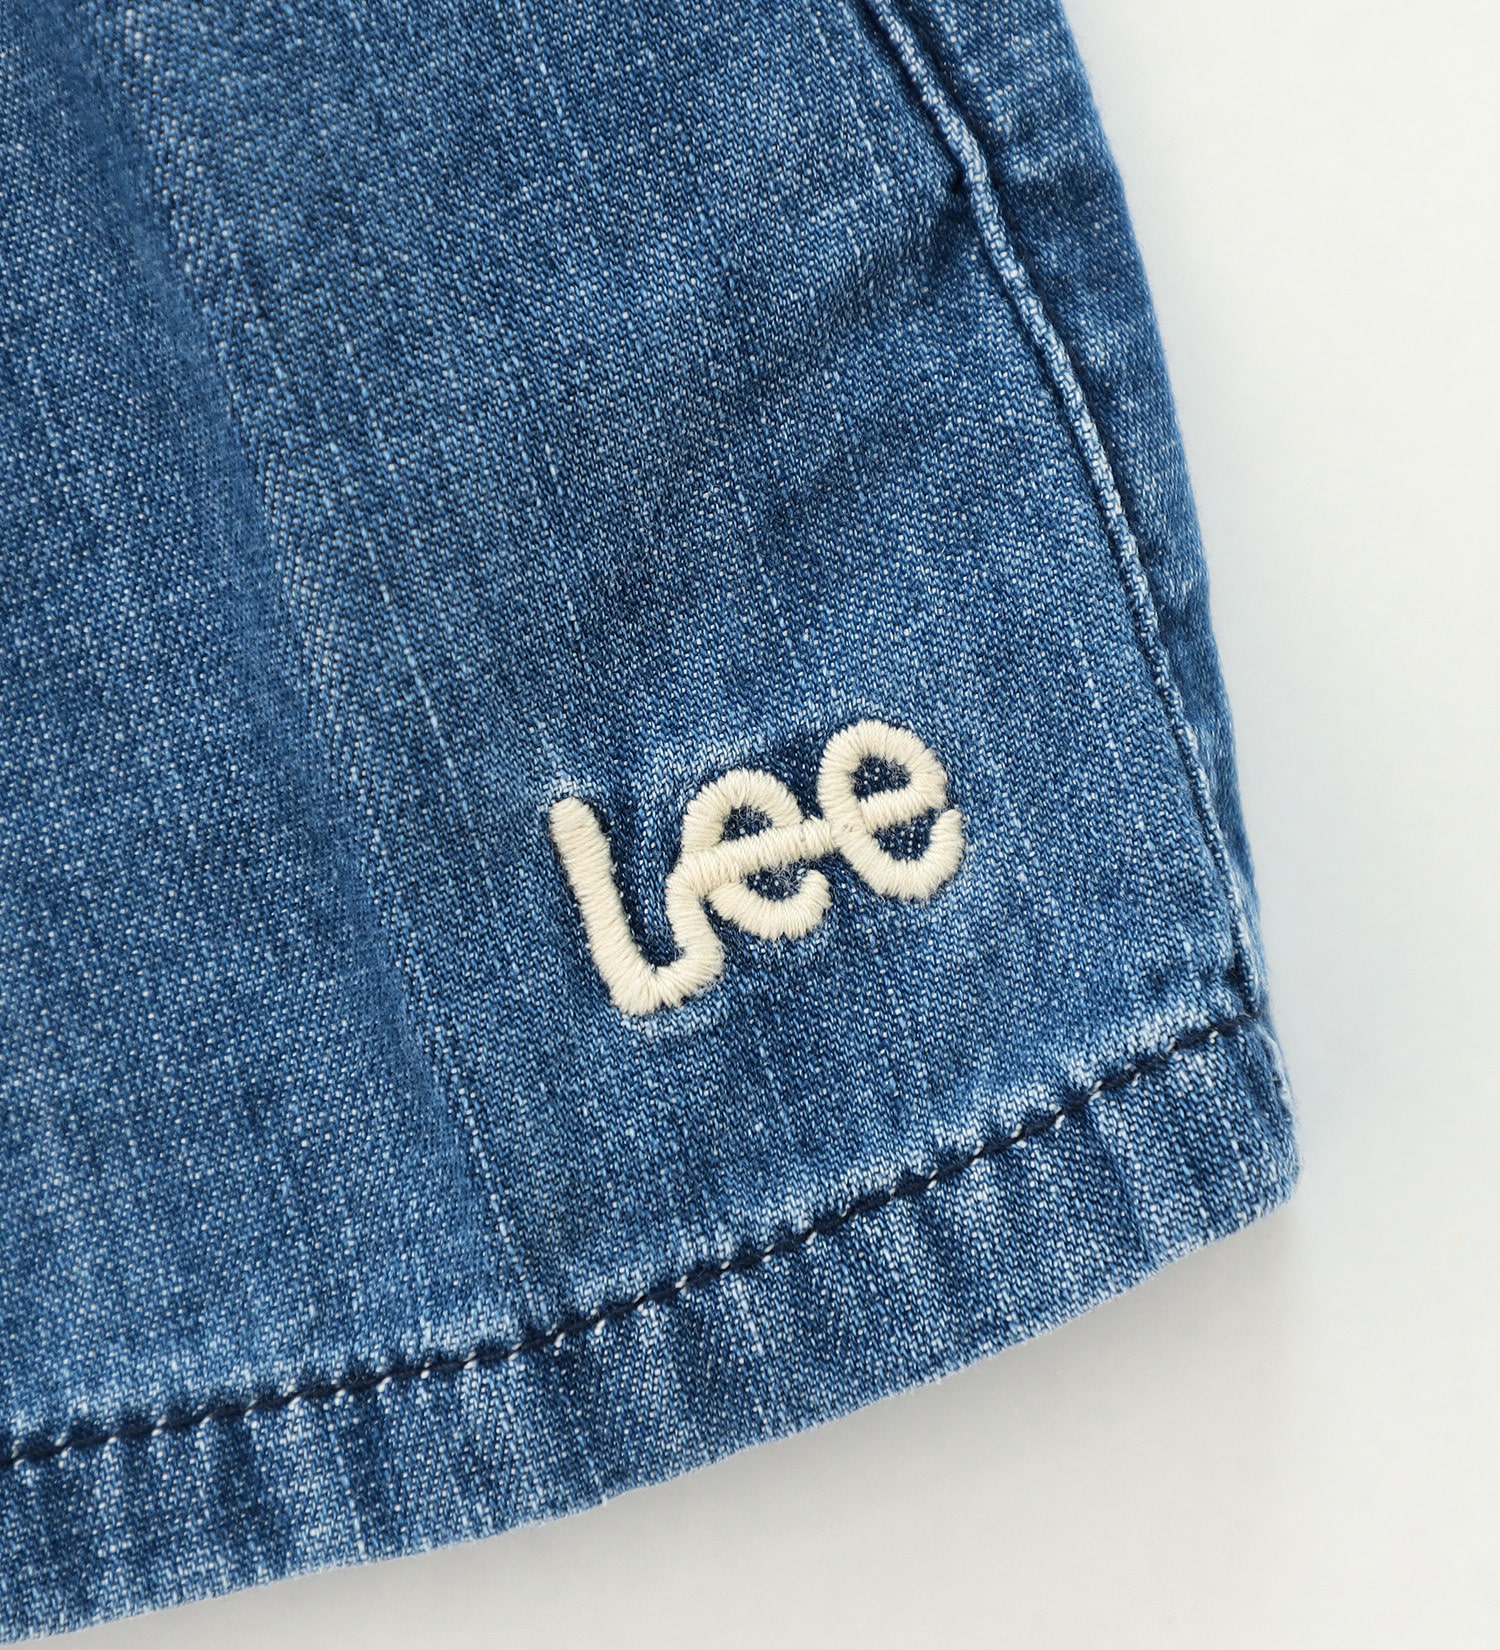 Lee(リー)の【試着対象】【110-150cm】キッズ キュロットパンツ|パンツ/デニムパンツ/キッズ|濃色ブルー